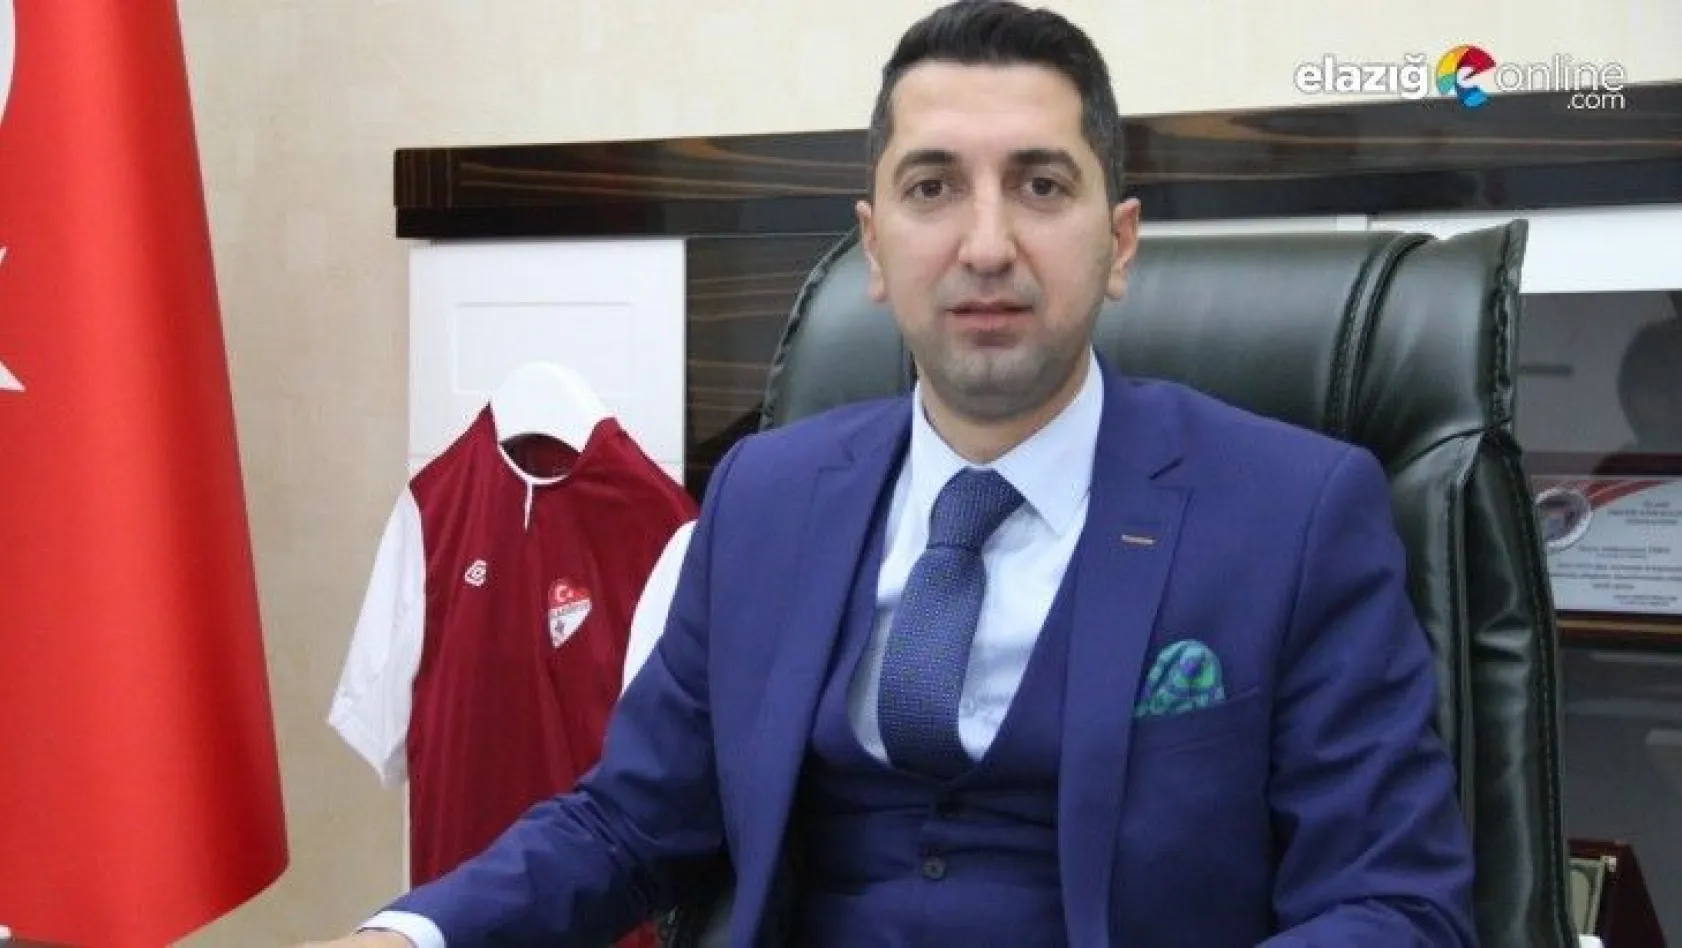 Elazığ Gençlik ve Spor İl Müdürü Eren, Covid-19'a yakalandı